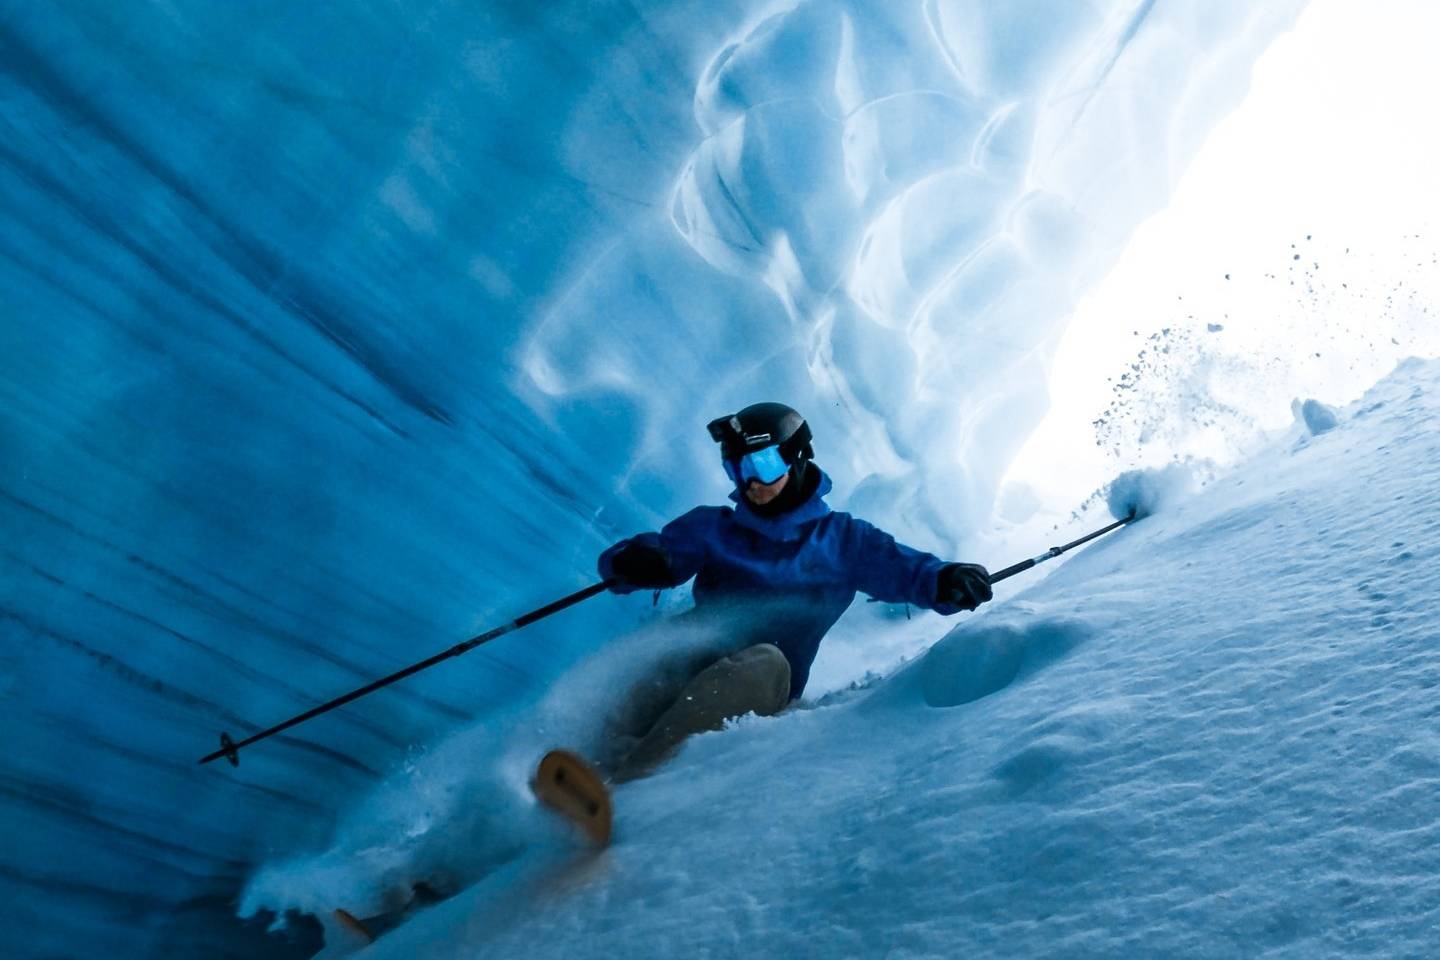 从 GoPro 的第一视角感受自由滑雪世界巡回赛的魅力